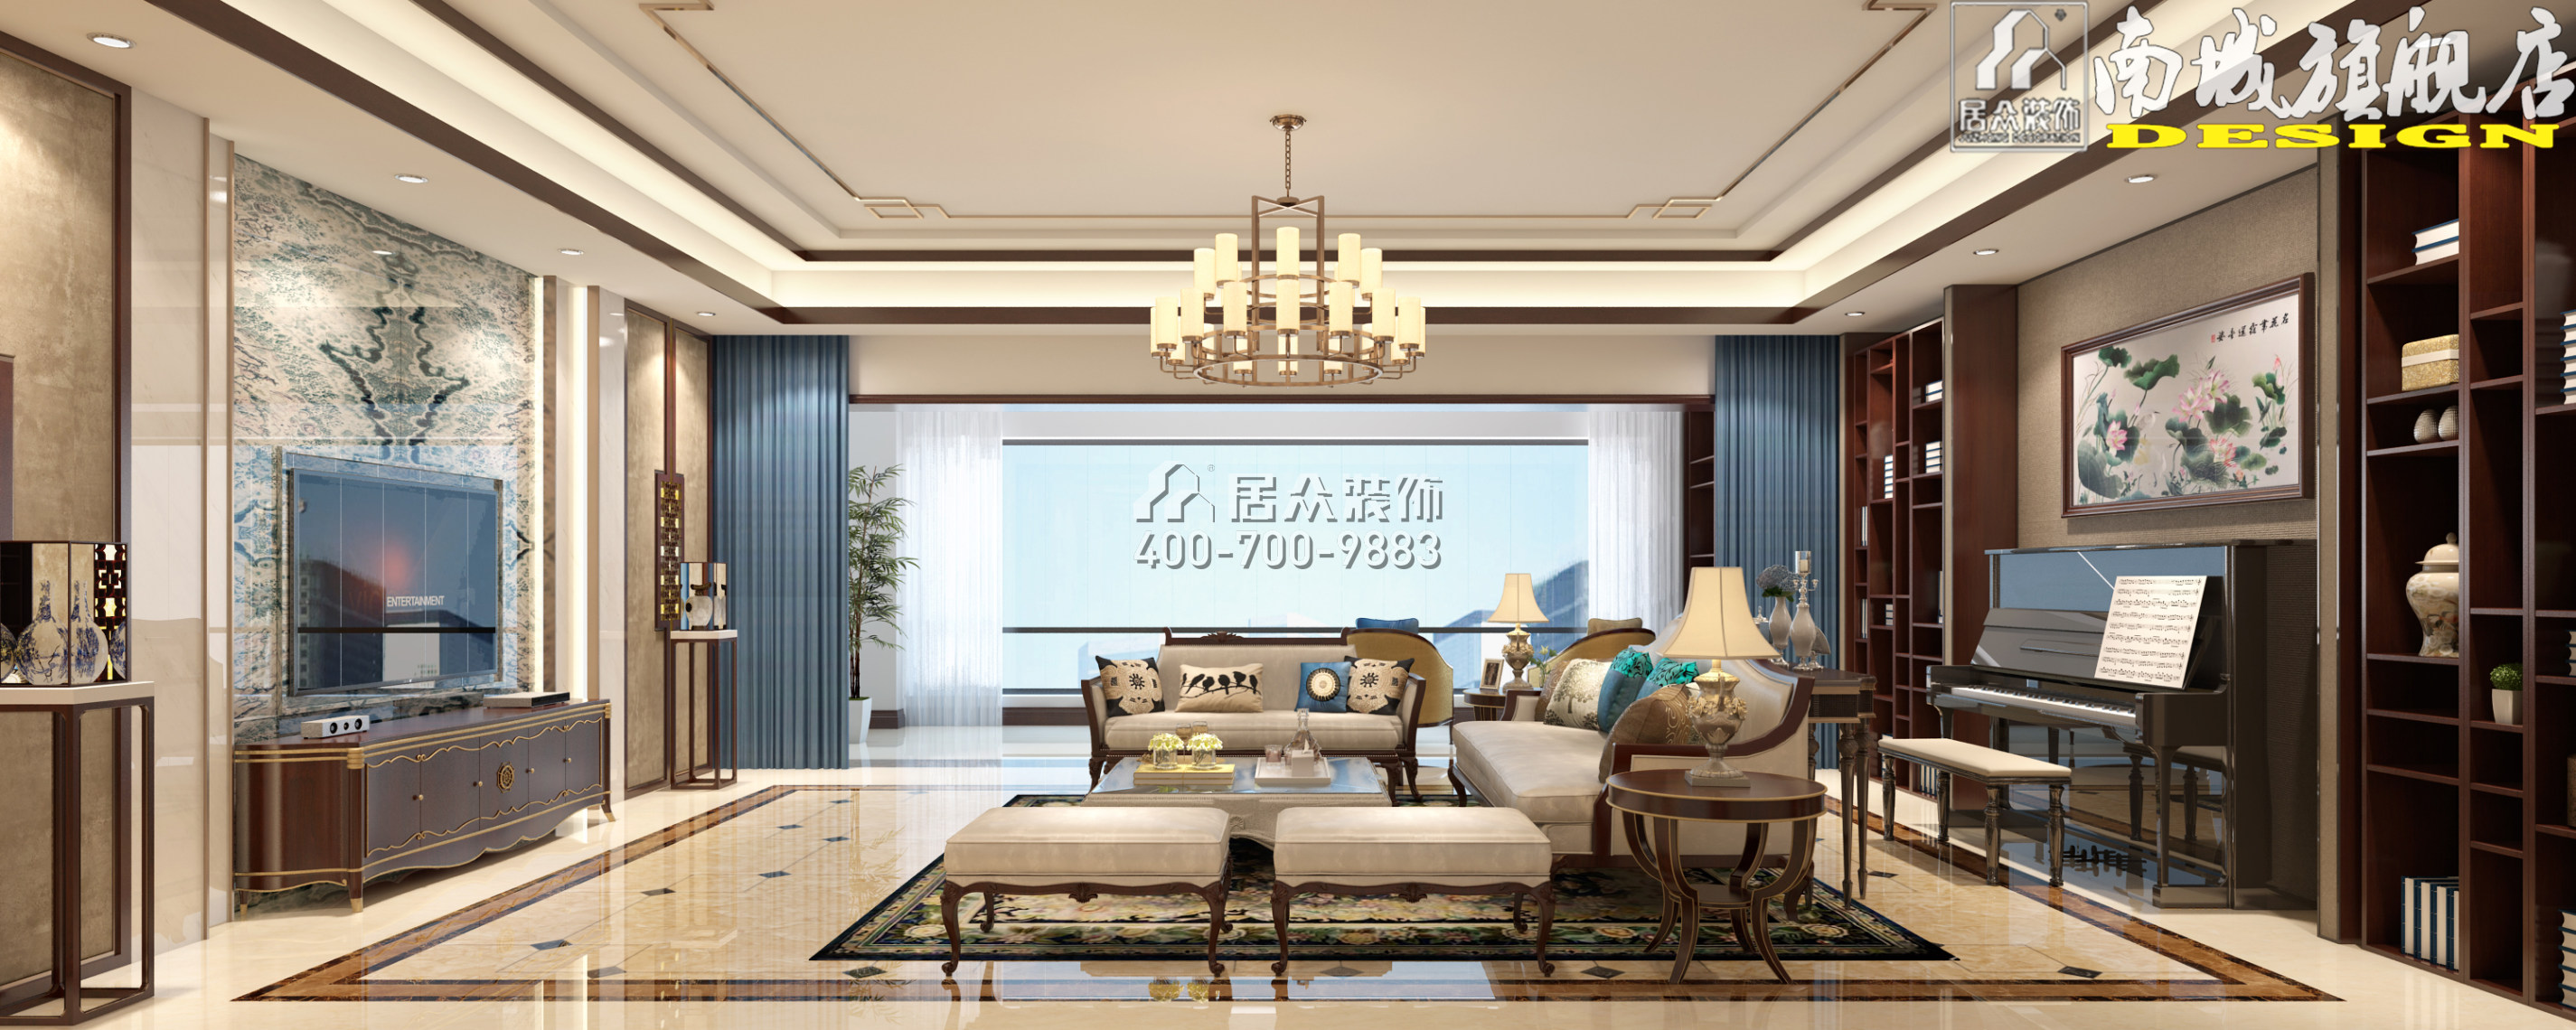 碧桂園天璽彎406平方米中式風格平層戶型客廳裝修效果圖